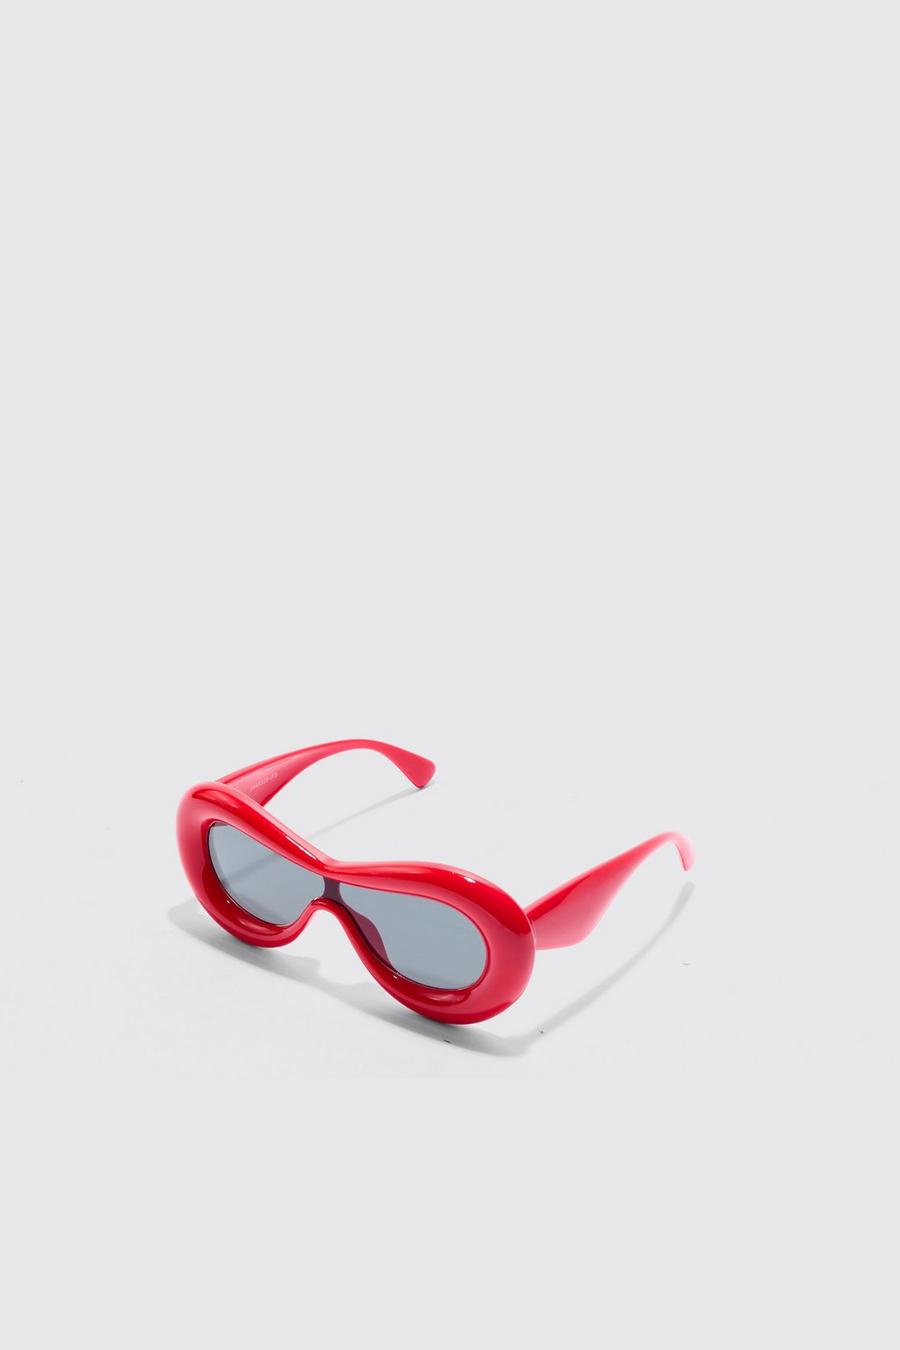 Gafas de sol infladas, Red